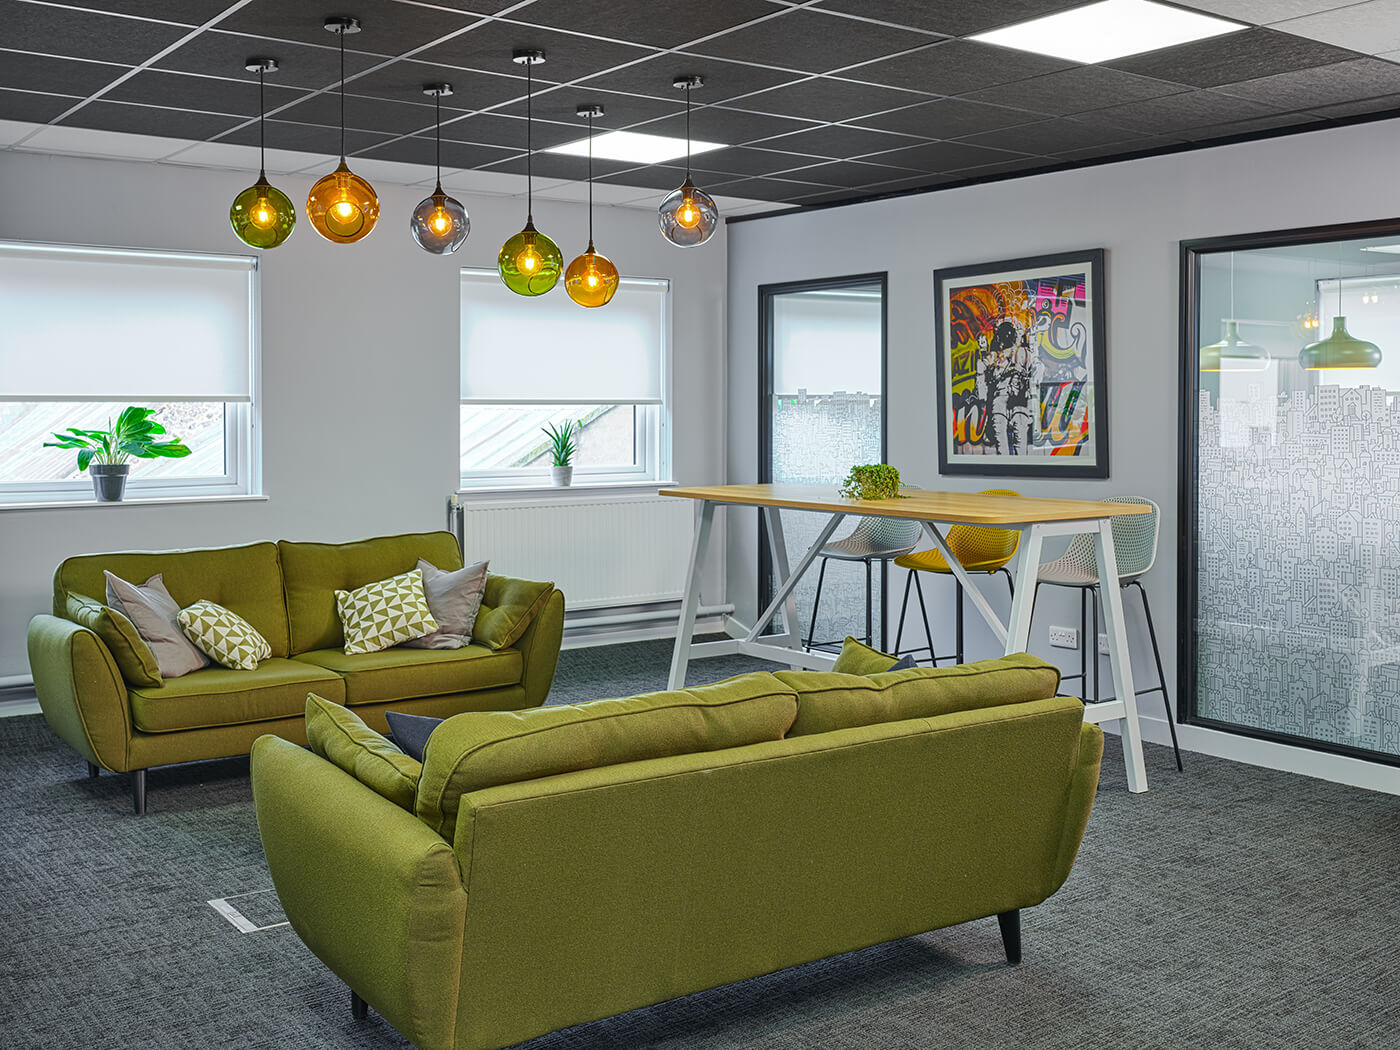 ایجاد اتاق و فضای استراحت برای کارمندان در طراحی دکوراسیون اداری